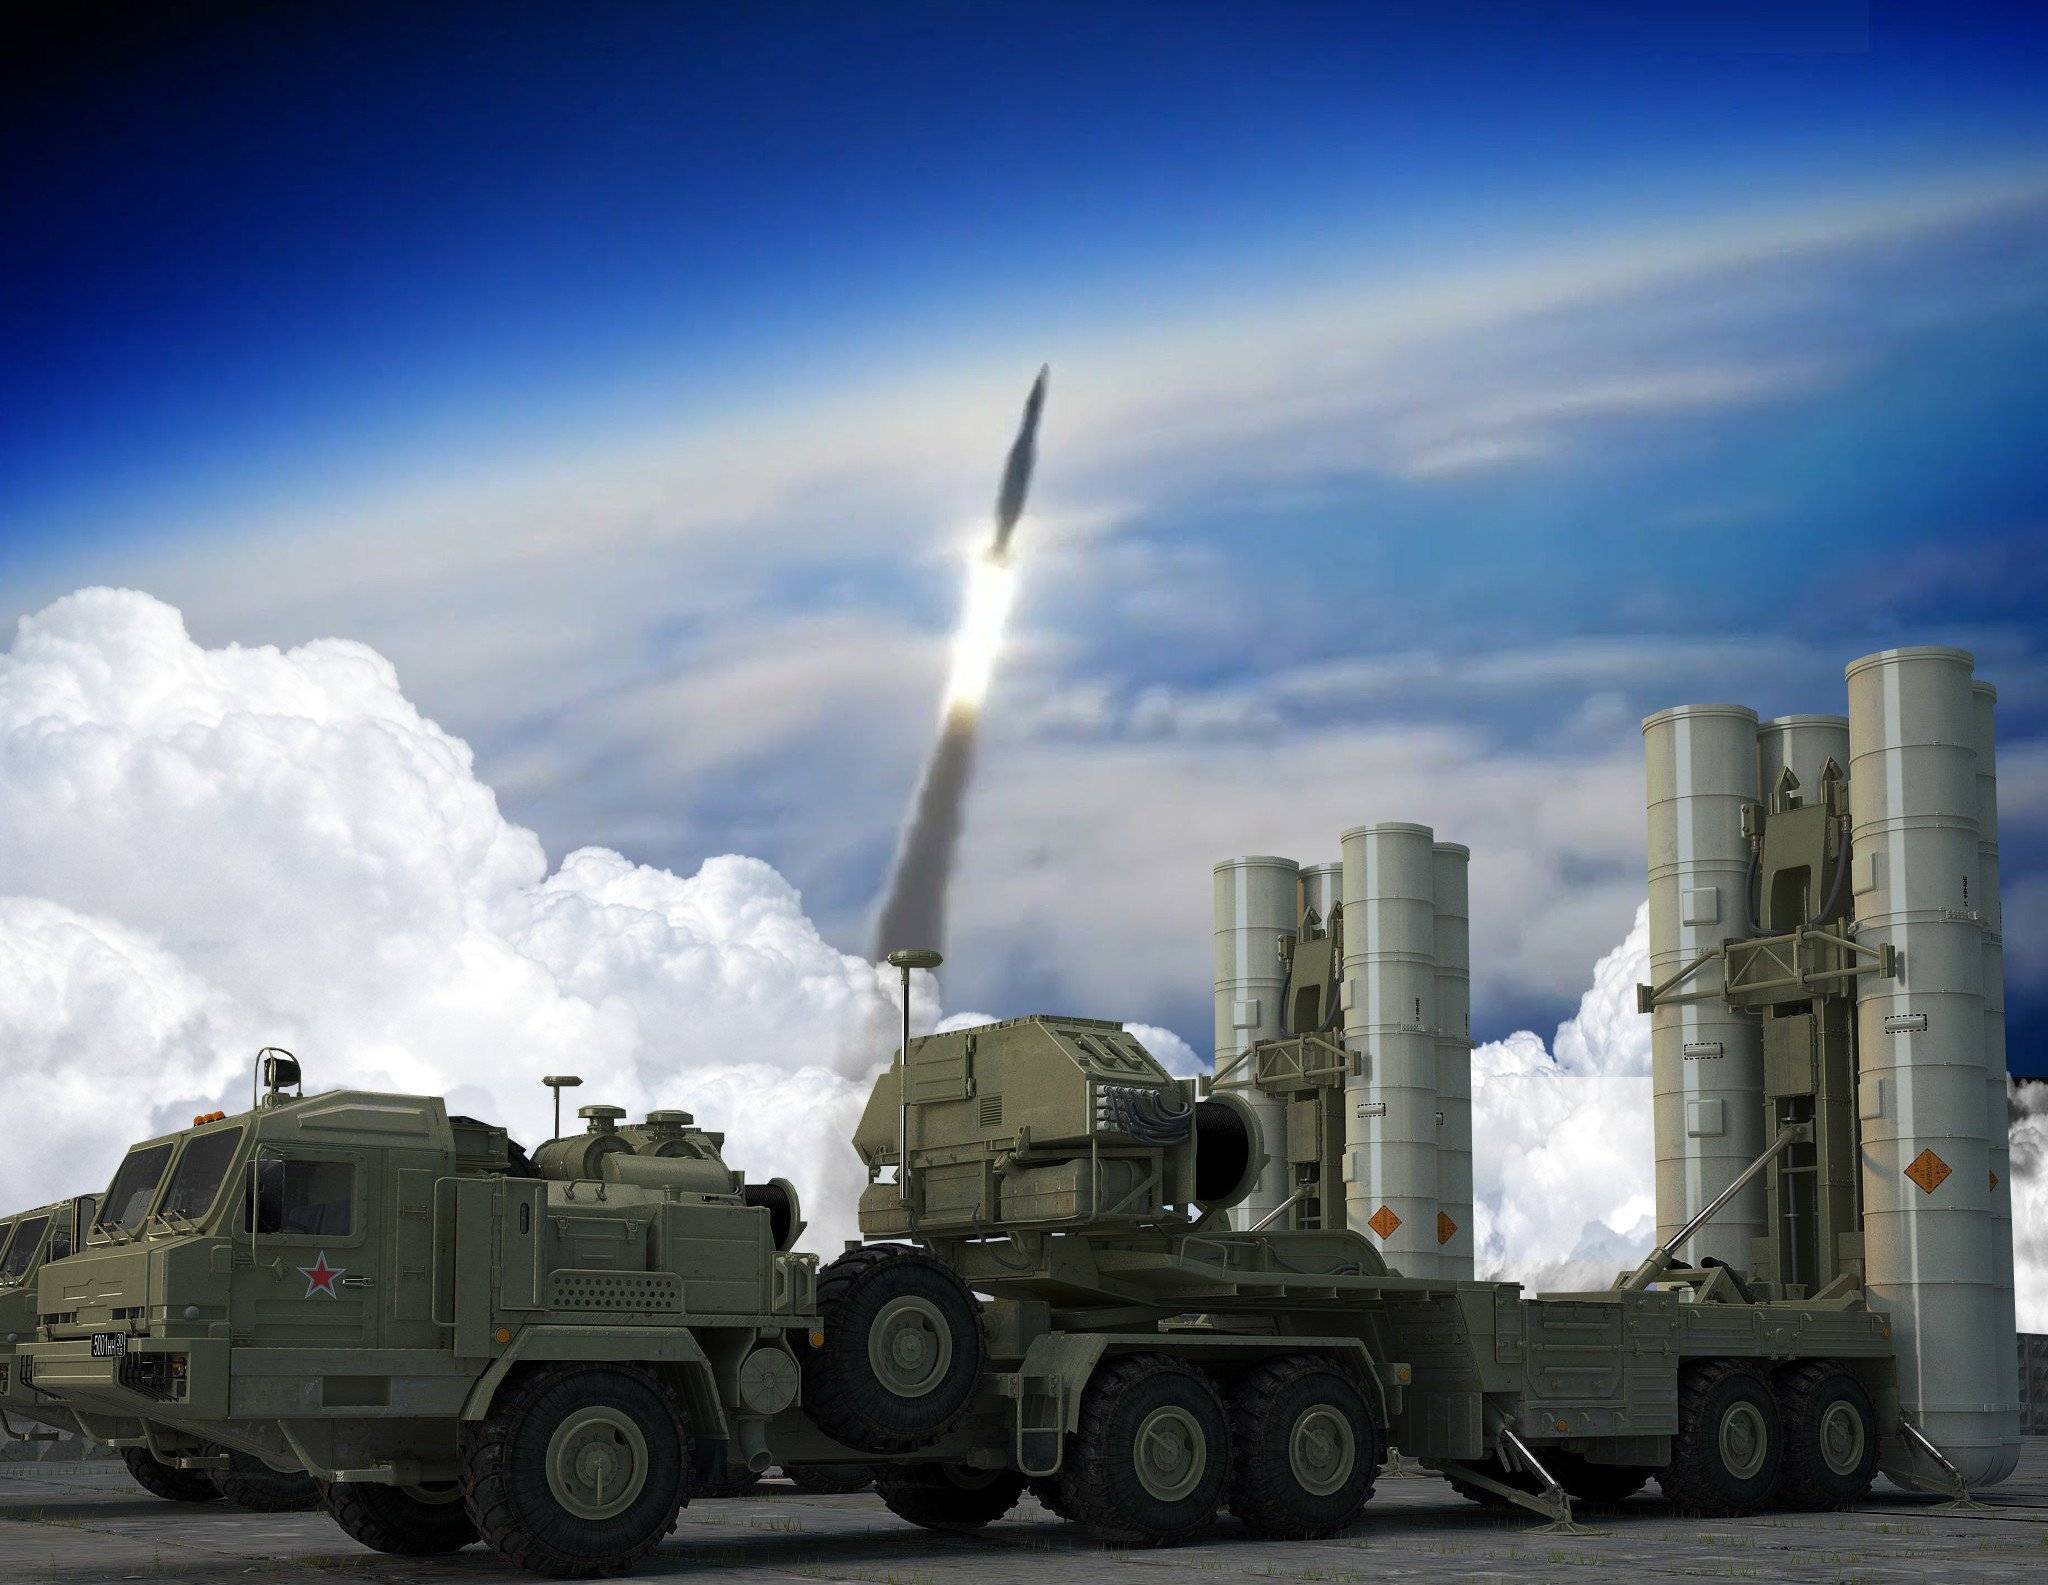 Зрк с-400 "триумф" (40р6) - зенитная ракетная система ⋆ северо-западный вестник